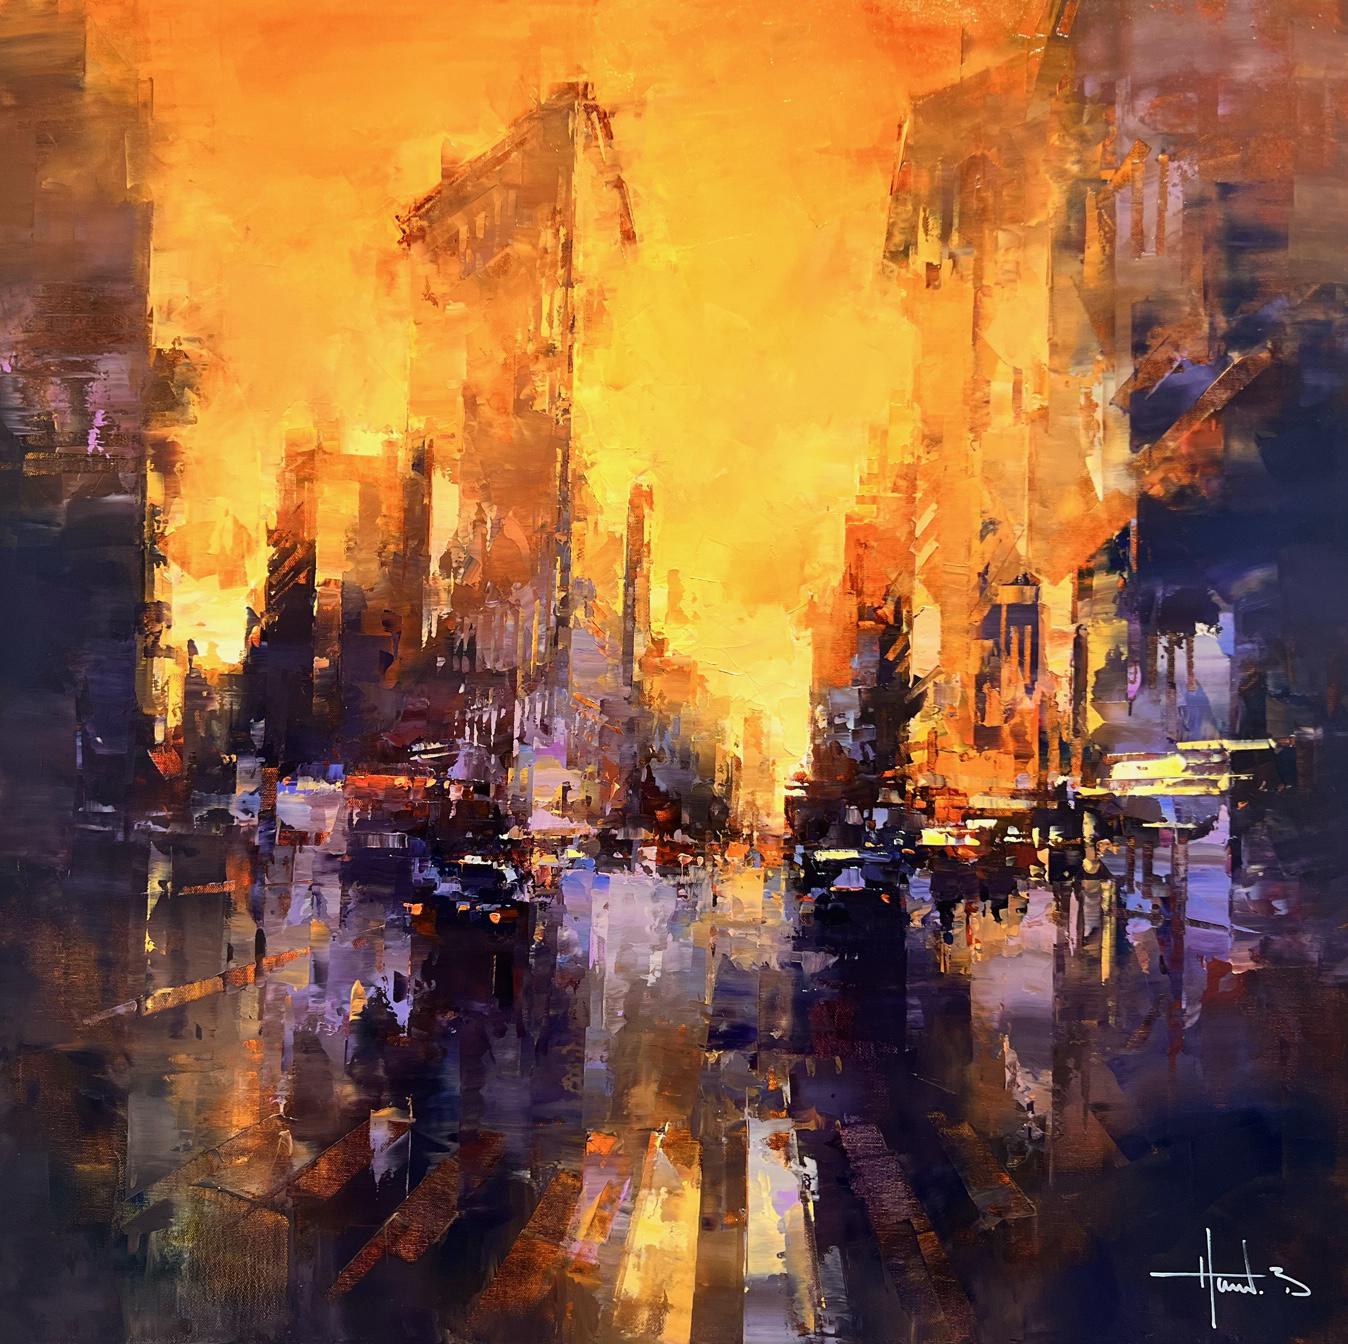 Havard Benoit, "Sundown Flatiron District", Manhattan NYC Oil Painting on Canvas